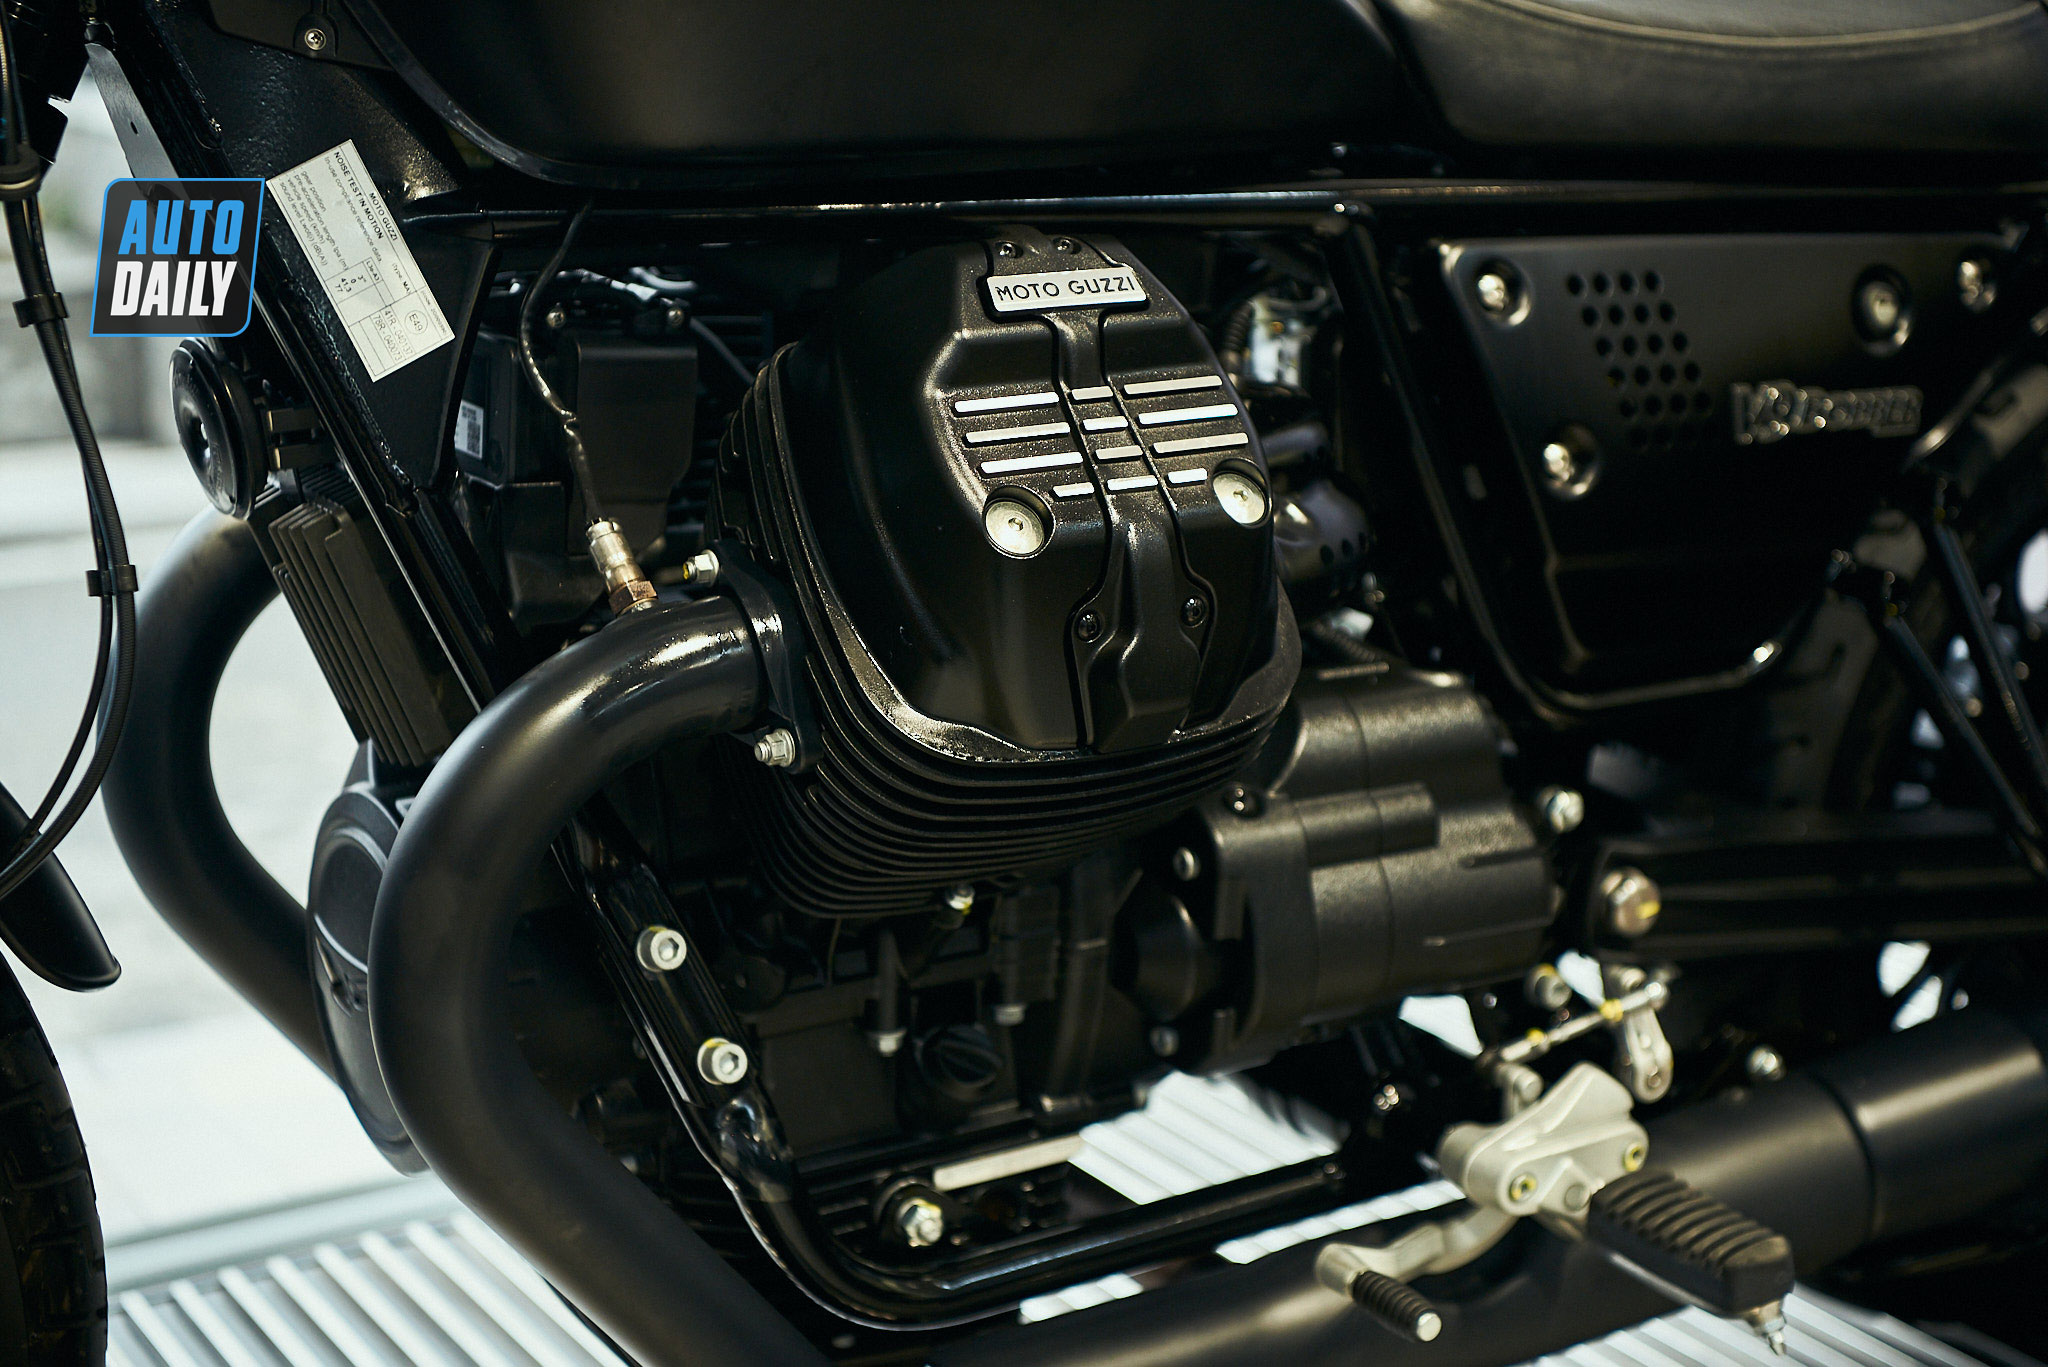 Chi tiết môtô cổ điển Moto Guzzi V9 Bobber giá từ 415 triệu đồng moto-guzzi-v9-bobber-05.jpg